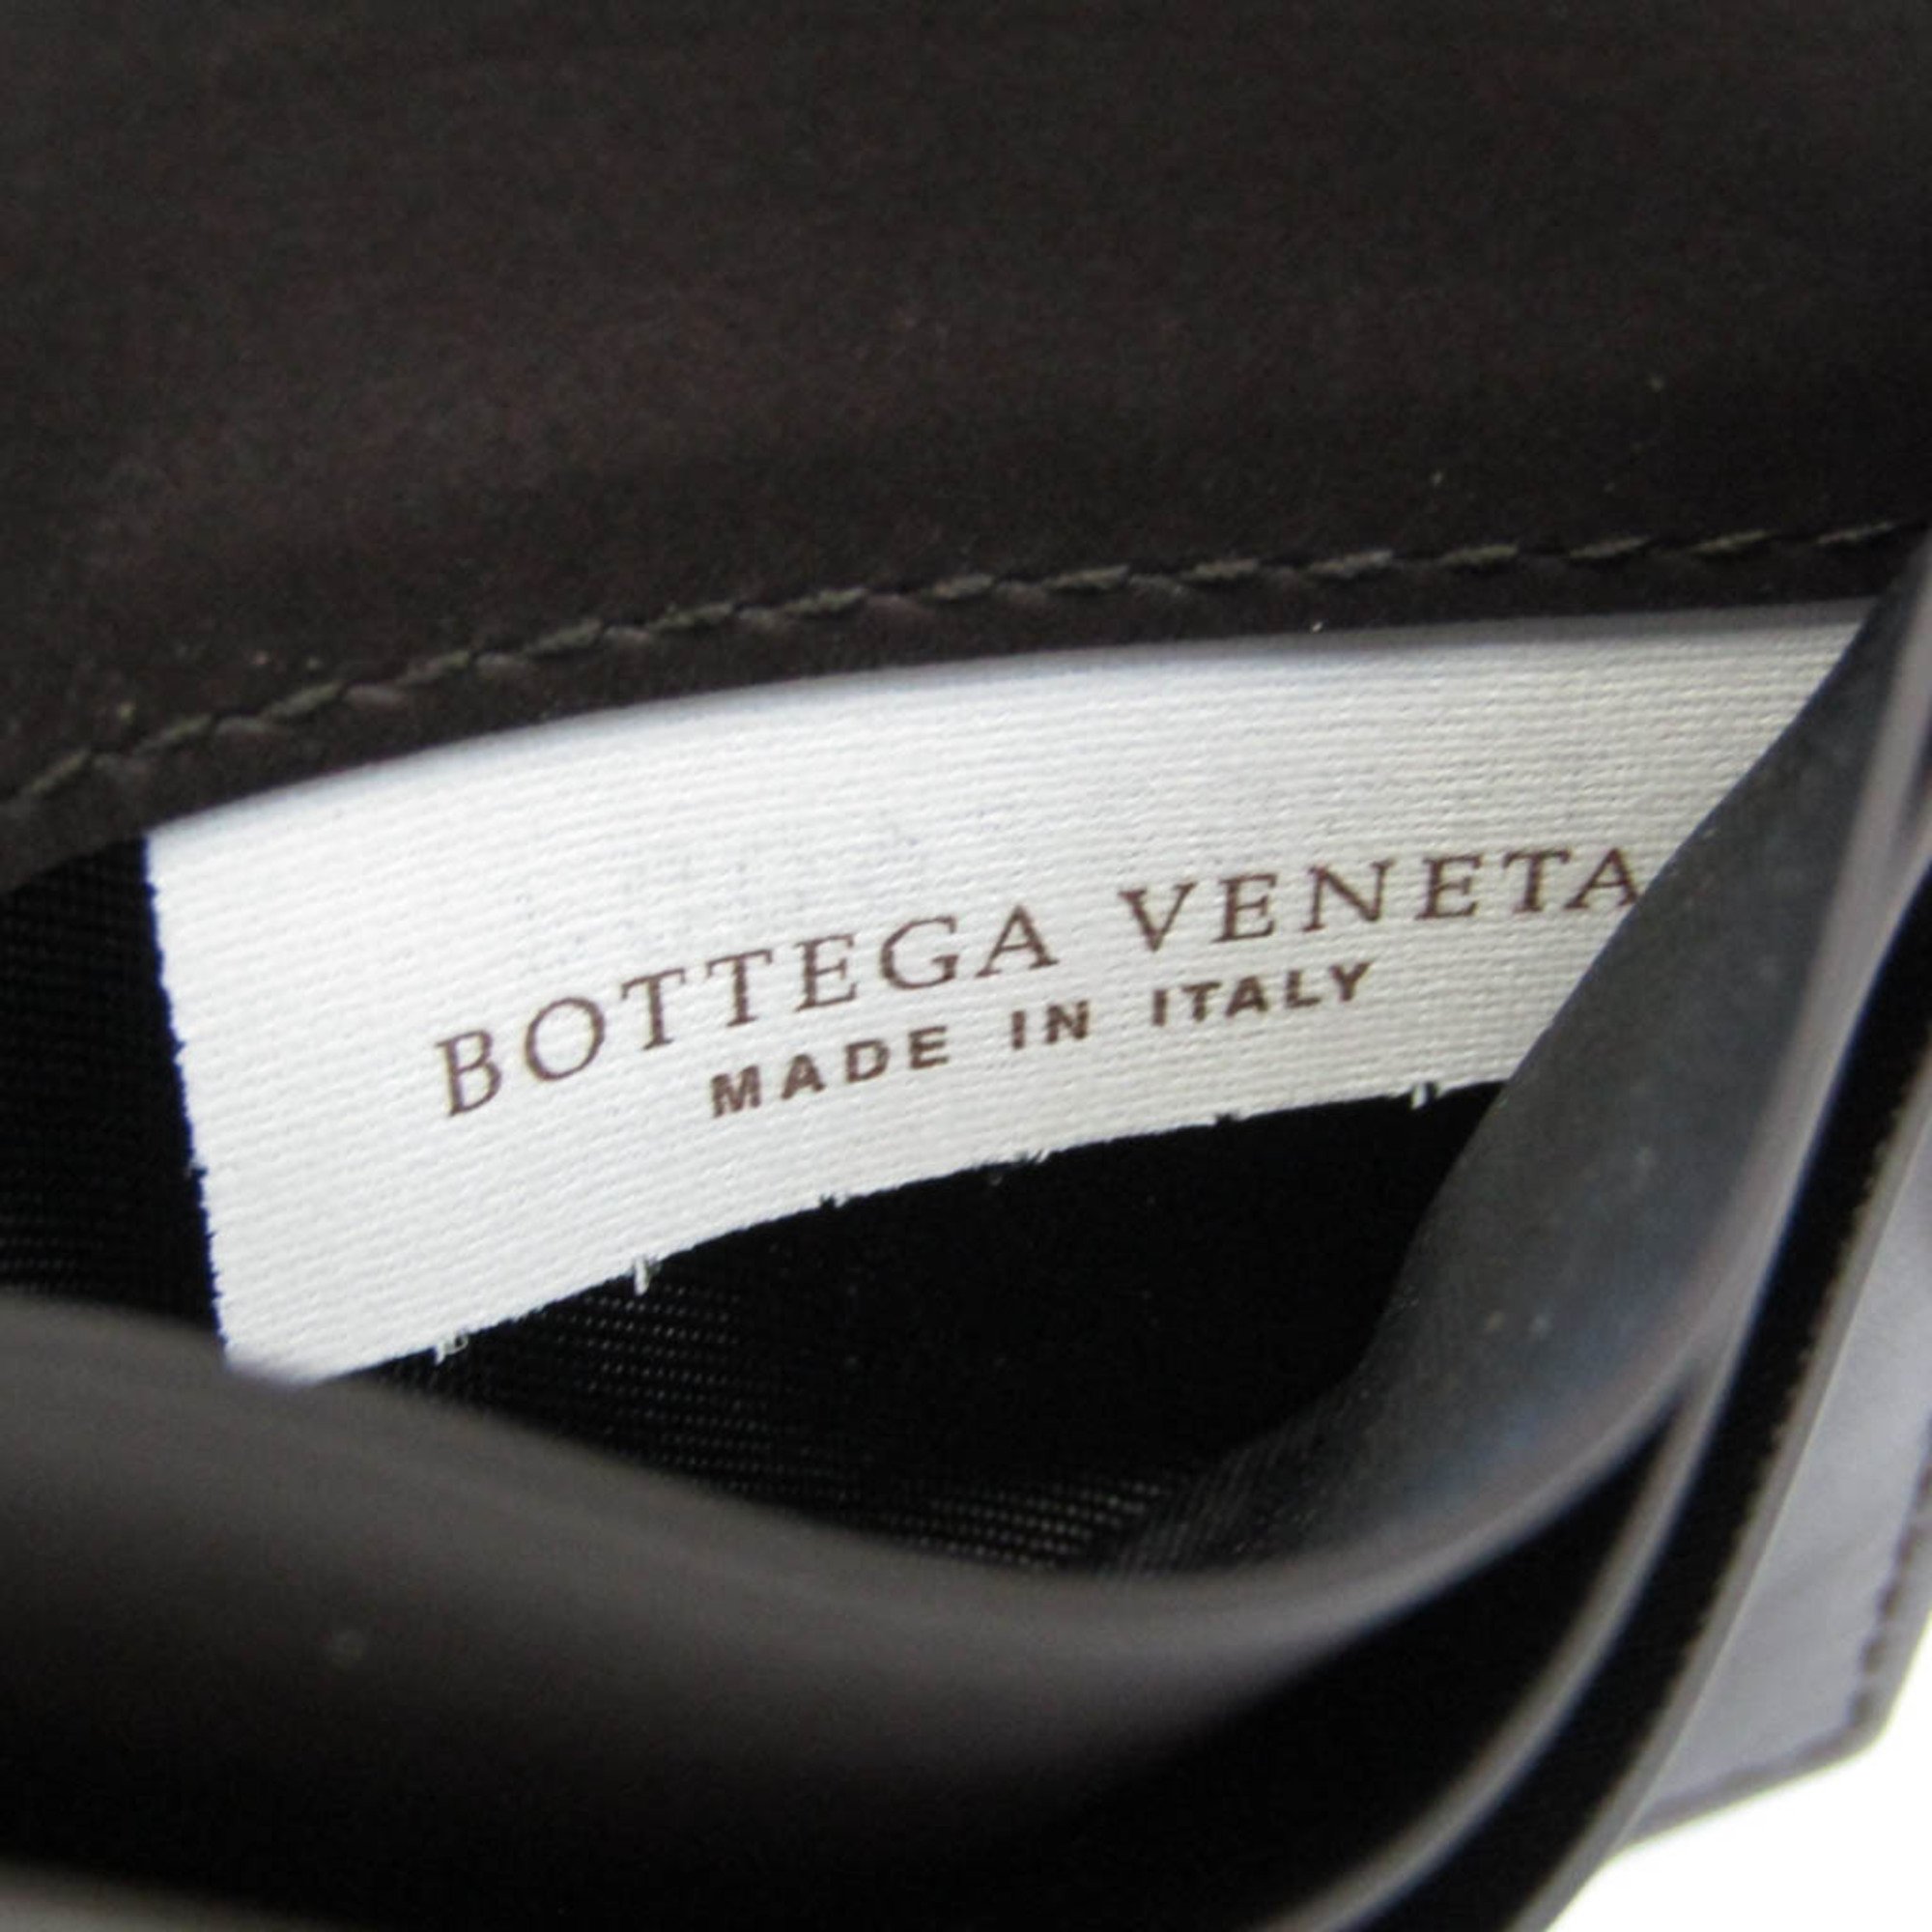 ボッテガ・ヴェネタ(Bottega Veneta) コントラスト パンチング 579246 レザー カードケース ダークブラウン